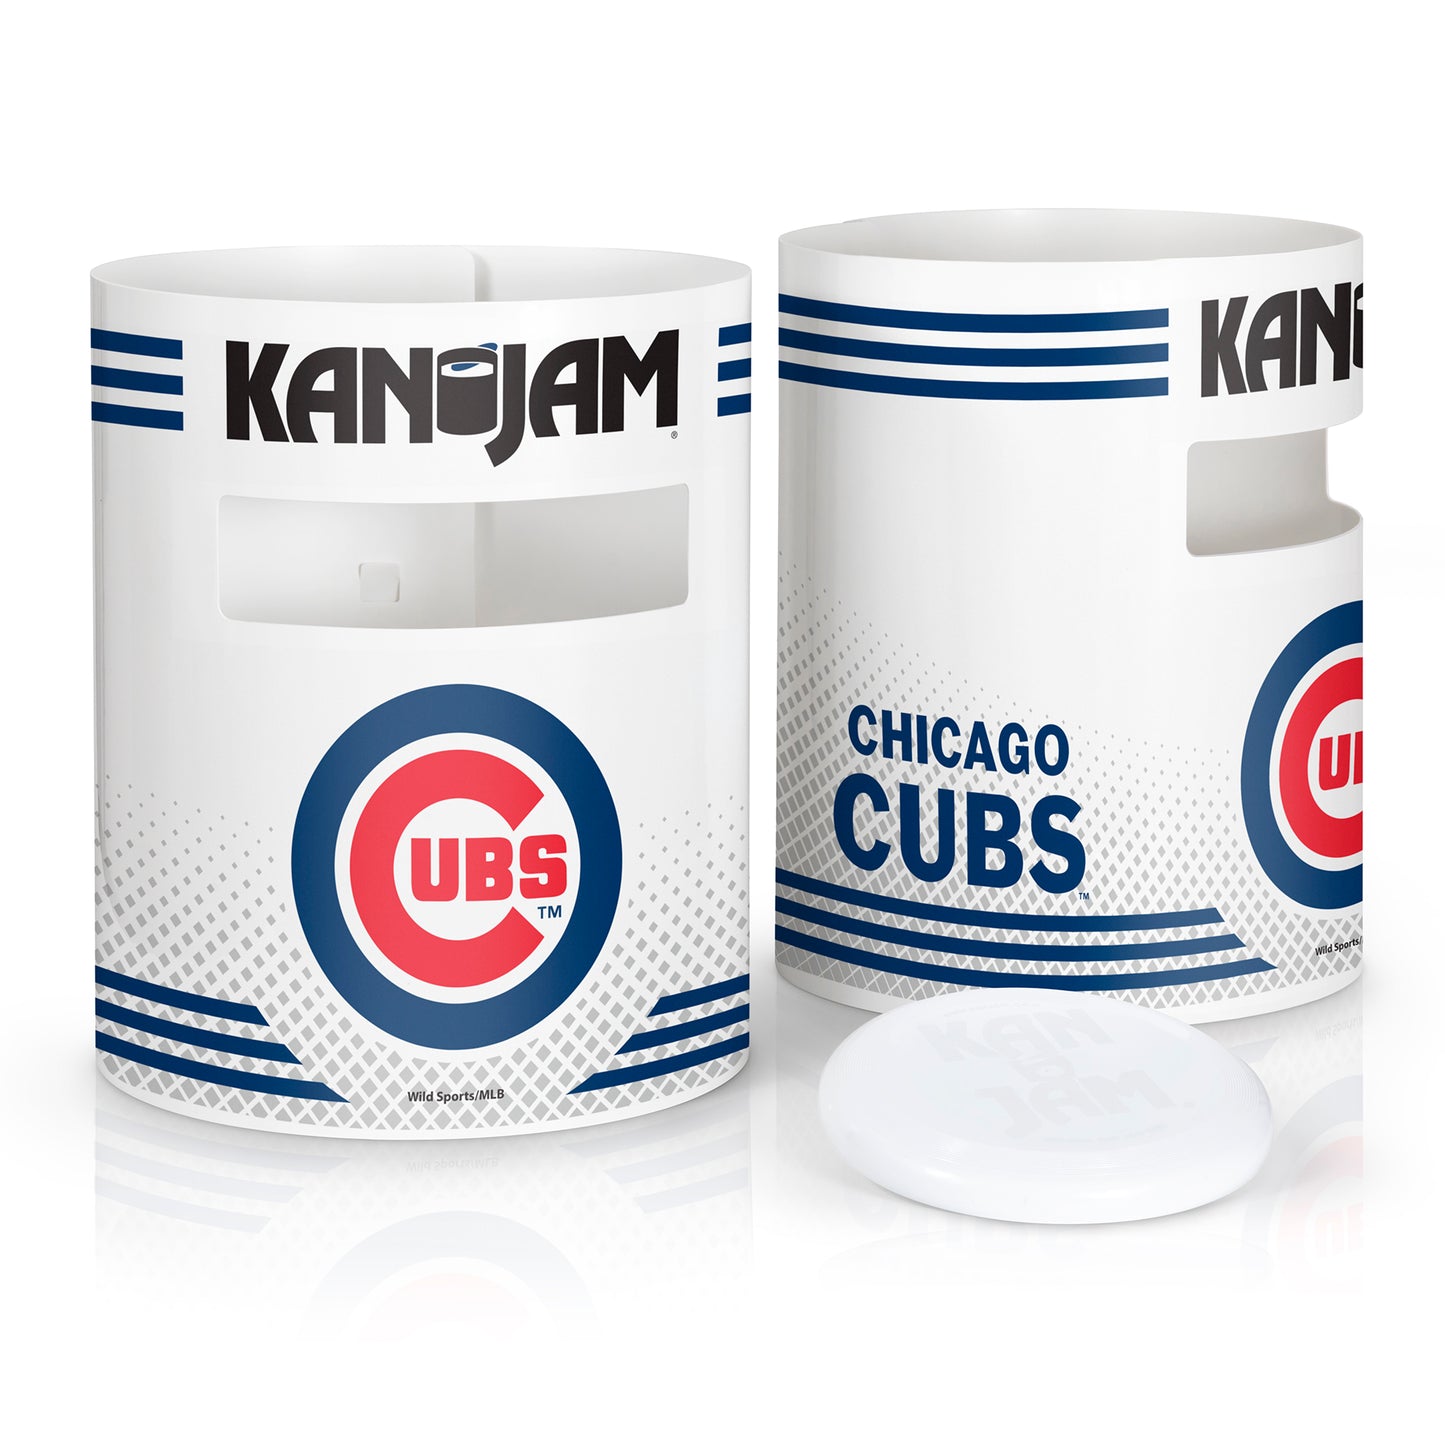 Chicago Cubs Kan Jam Set